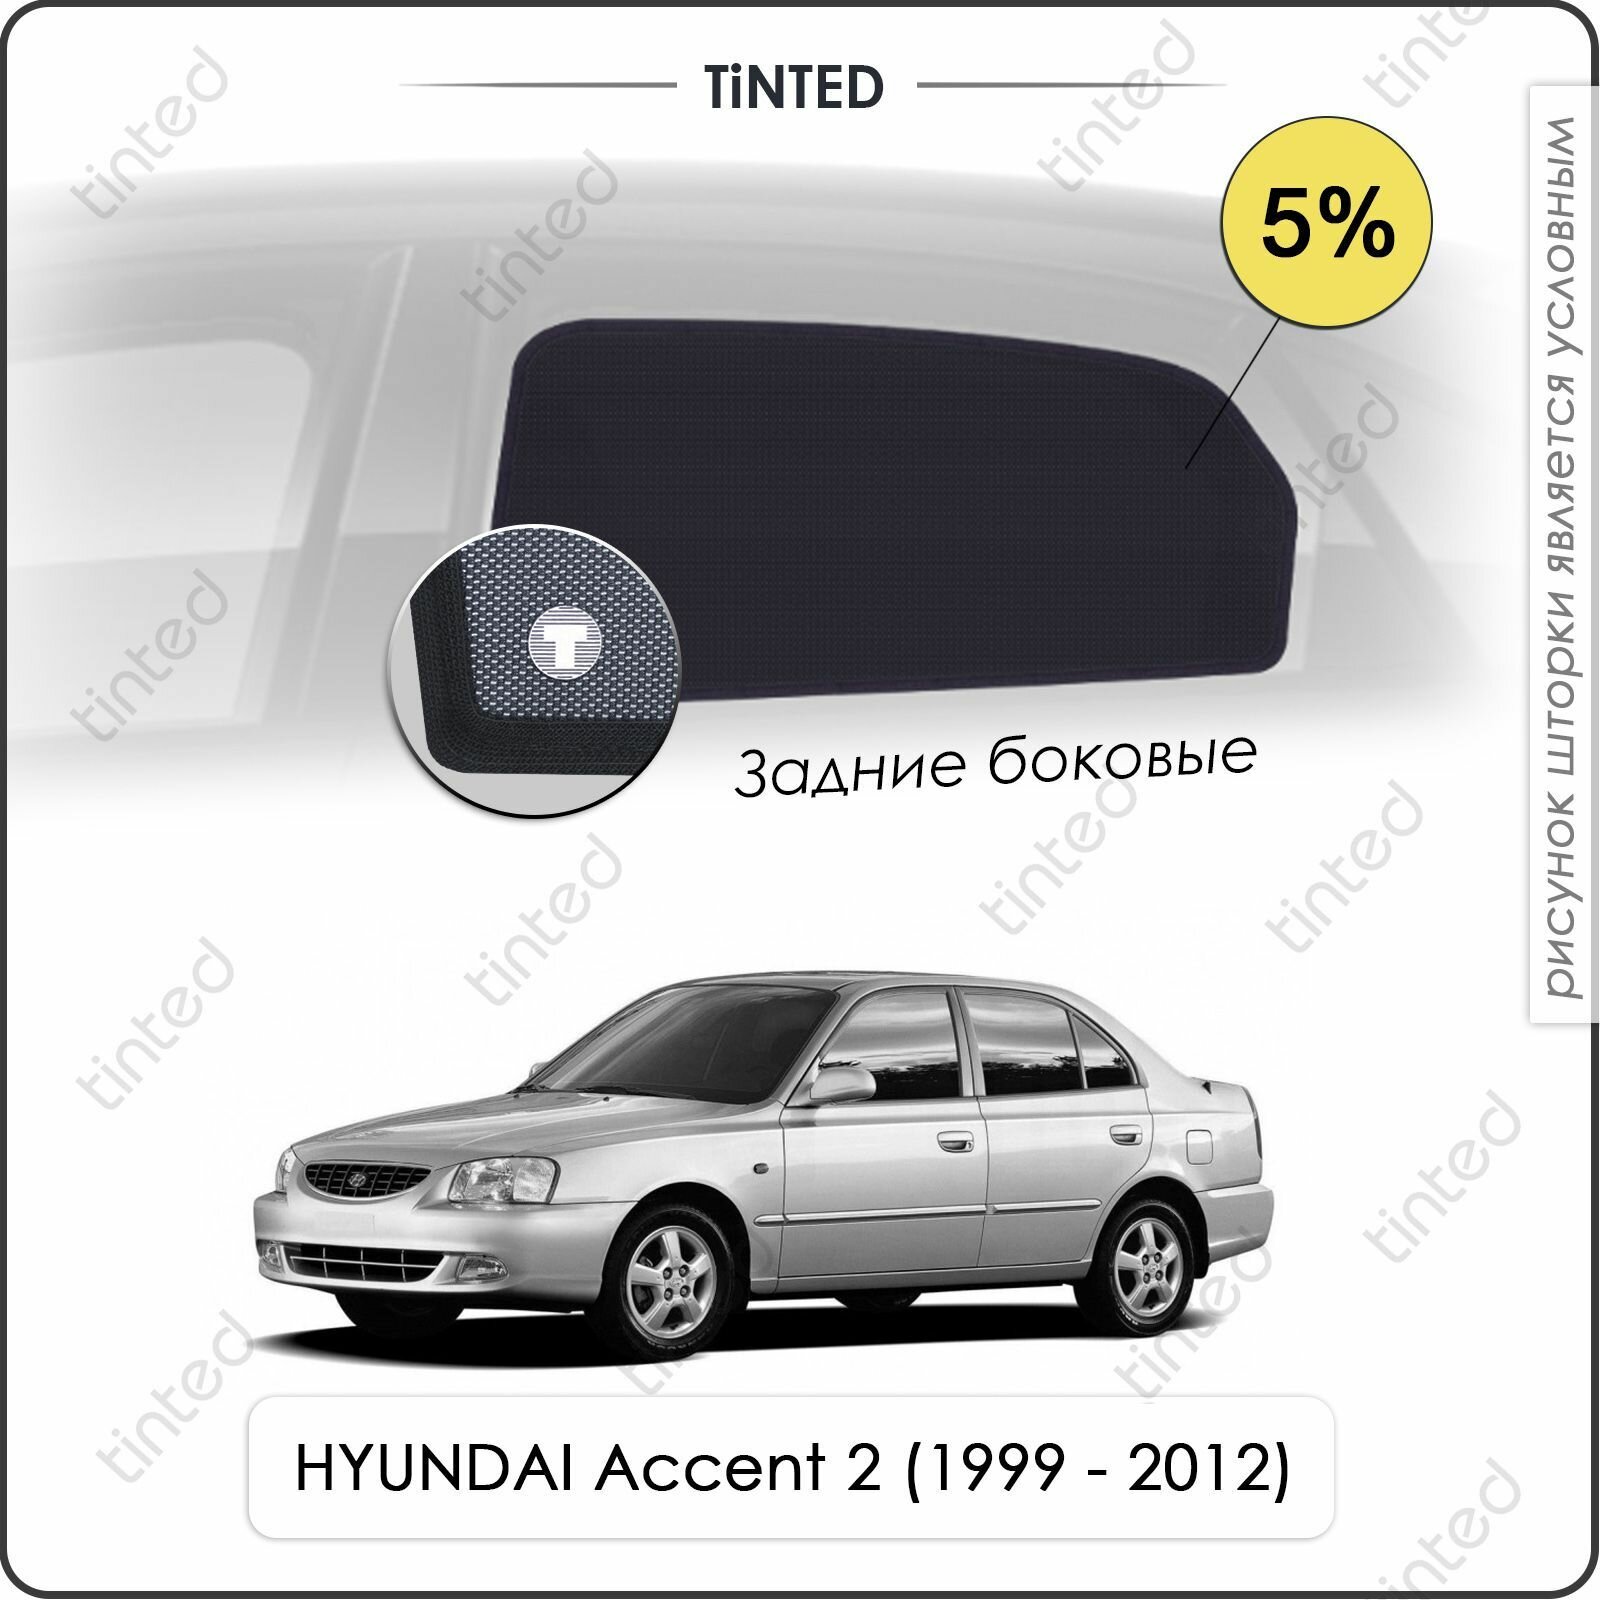 Шторки на автомобиль солнцезащитные HYUNDAI Accent 2 Седан 4дв. (1999 - 2012) на задние двери 5%, сетки от солнца в машину хёндай акцент, Каркасные автошторки Premium